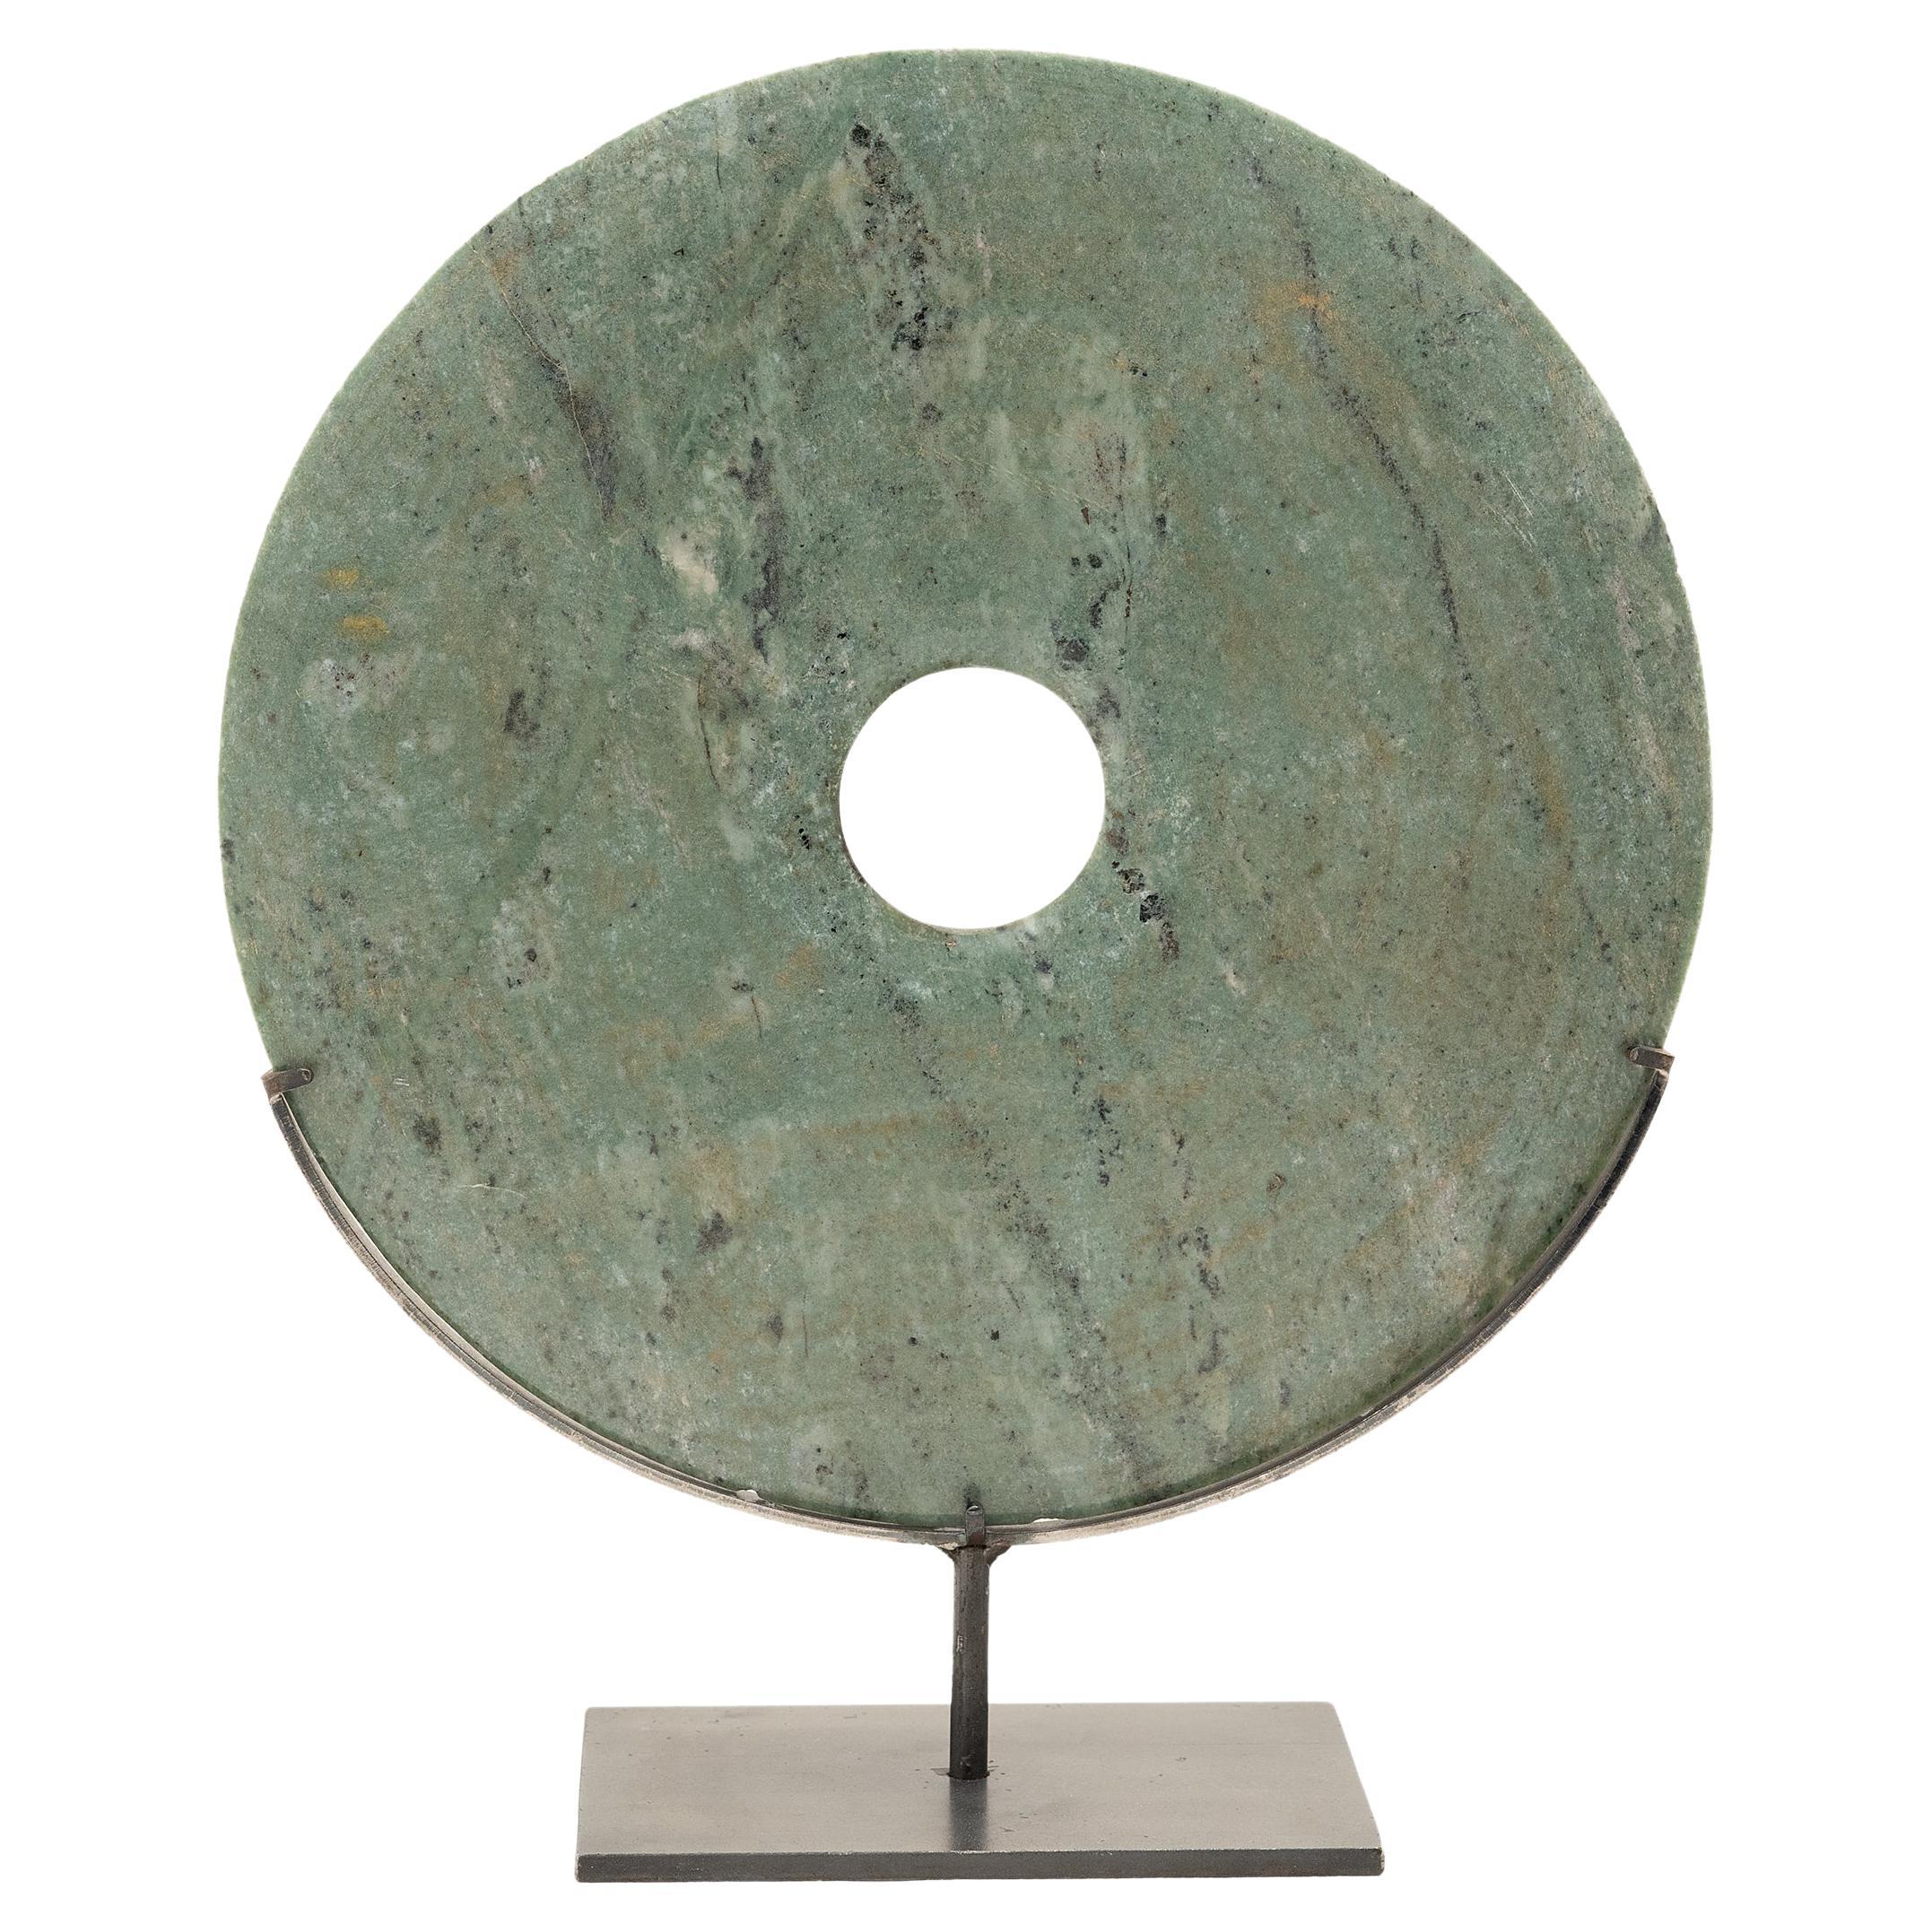 A Stone Stone Bi Disc